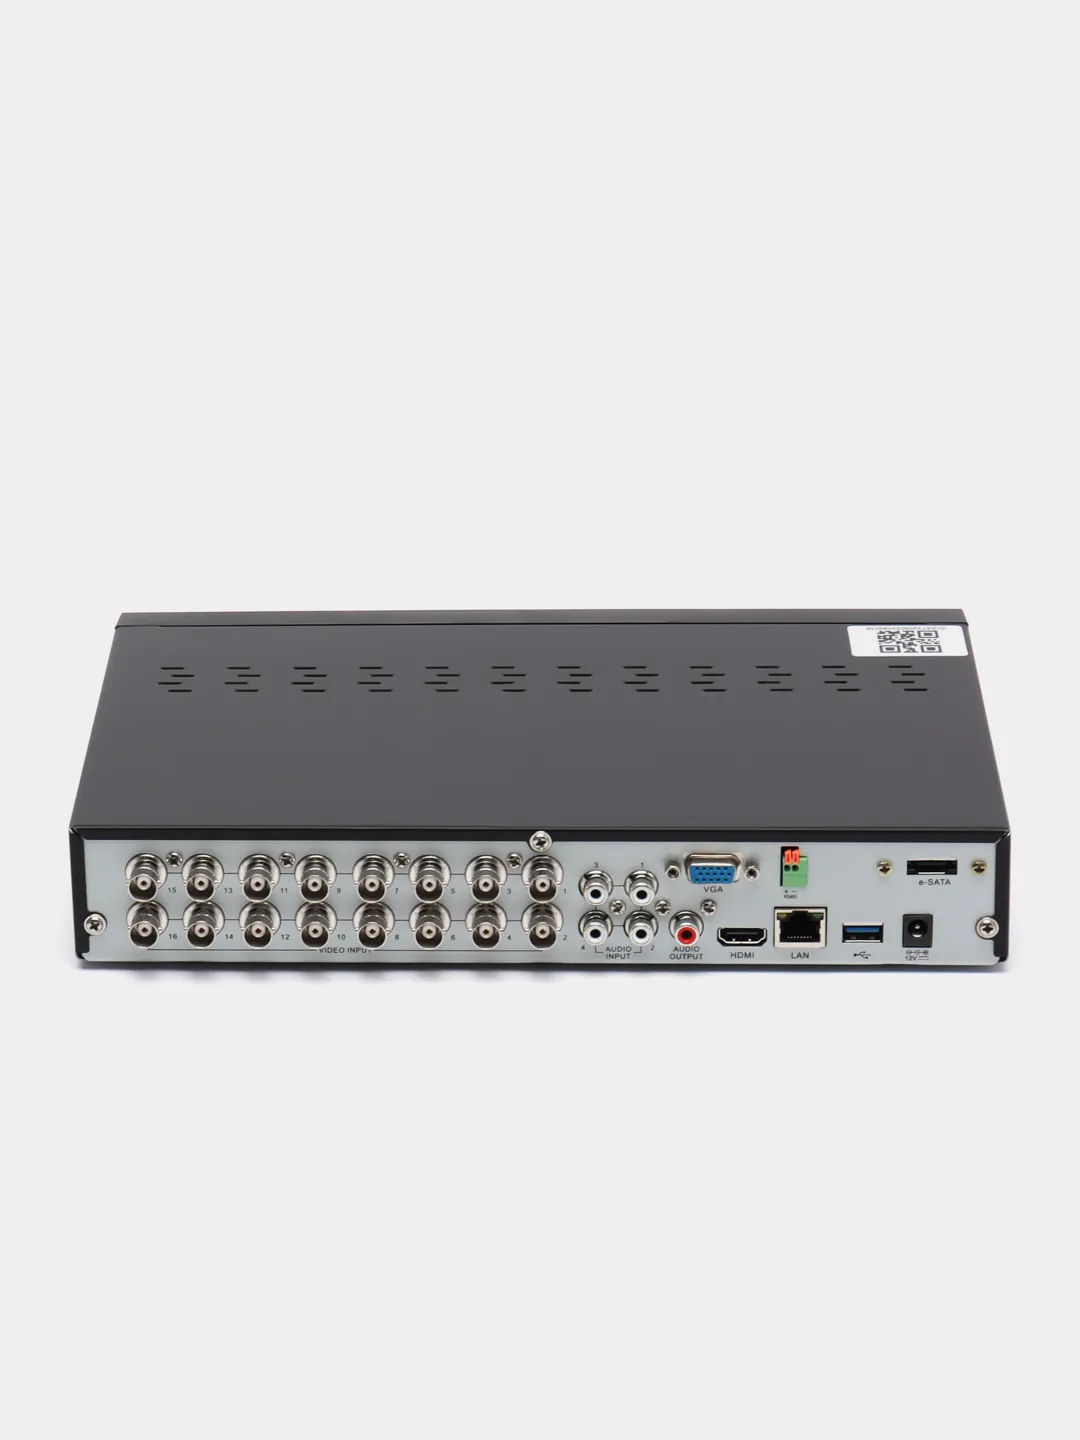 Регистраторы 16 ти канальные. SVR-6110n v3.0 видеорегистратор гибридный. Подключение регистратора гибрид Эльбрус.